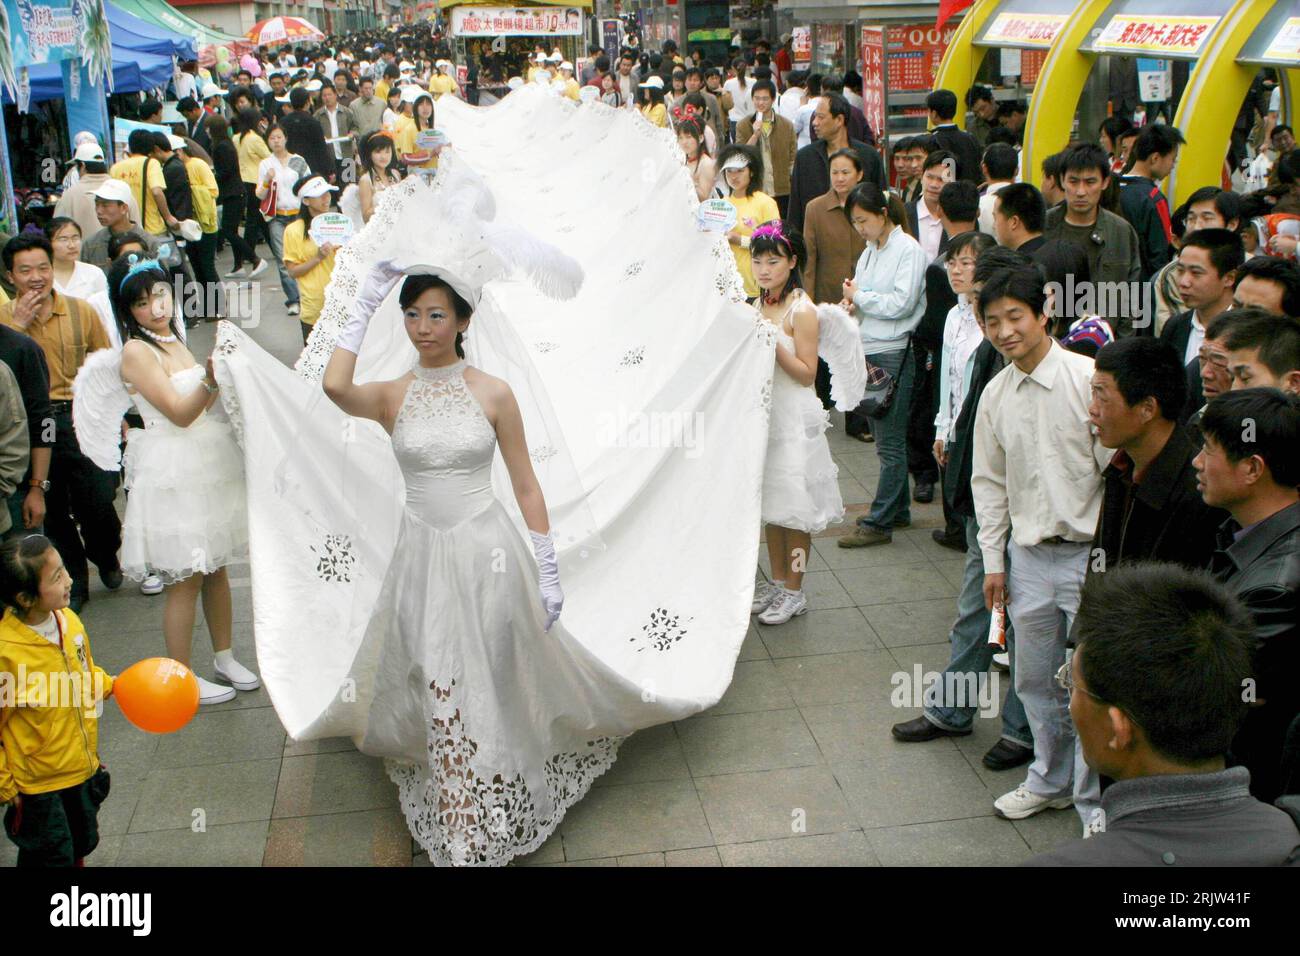 Bildnummer: 51839225  Datum: 01.05.2007  Copyright: imago/Xinhua Model präsentiert ein 36 Meter langes Hochzeitskleid bei einer Promotionveranstaltung für eine Hochzeitsfotofirma in Jinan  - PUBLICATIONxNOTxINxCHN, Personen; 2007, Jinan, , , , Model, Models, Promotionveranstaltung; , quer, Kbdig, Totale, China,  , Beauty, Fashion, Asien o0 Frau Stock Photo